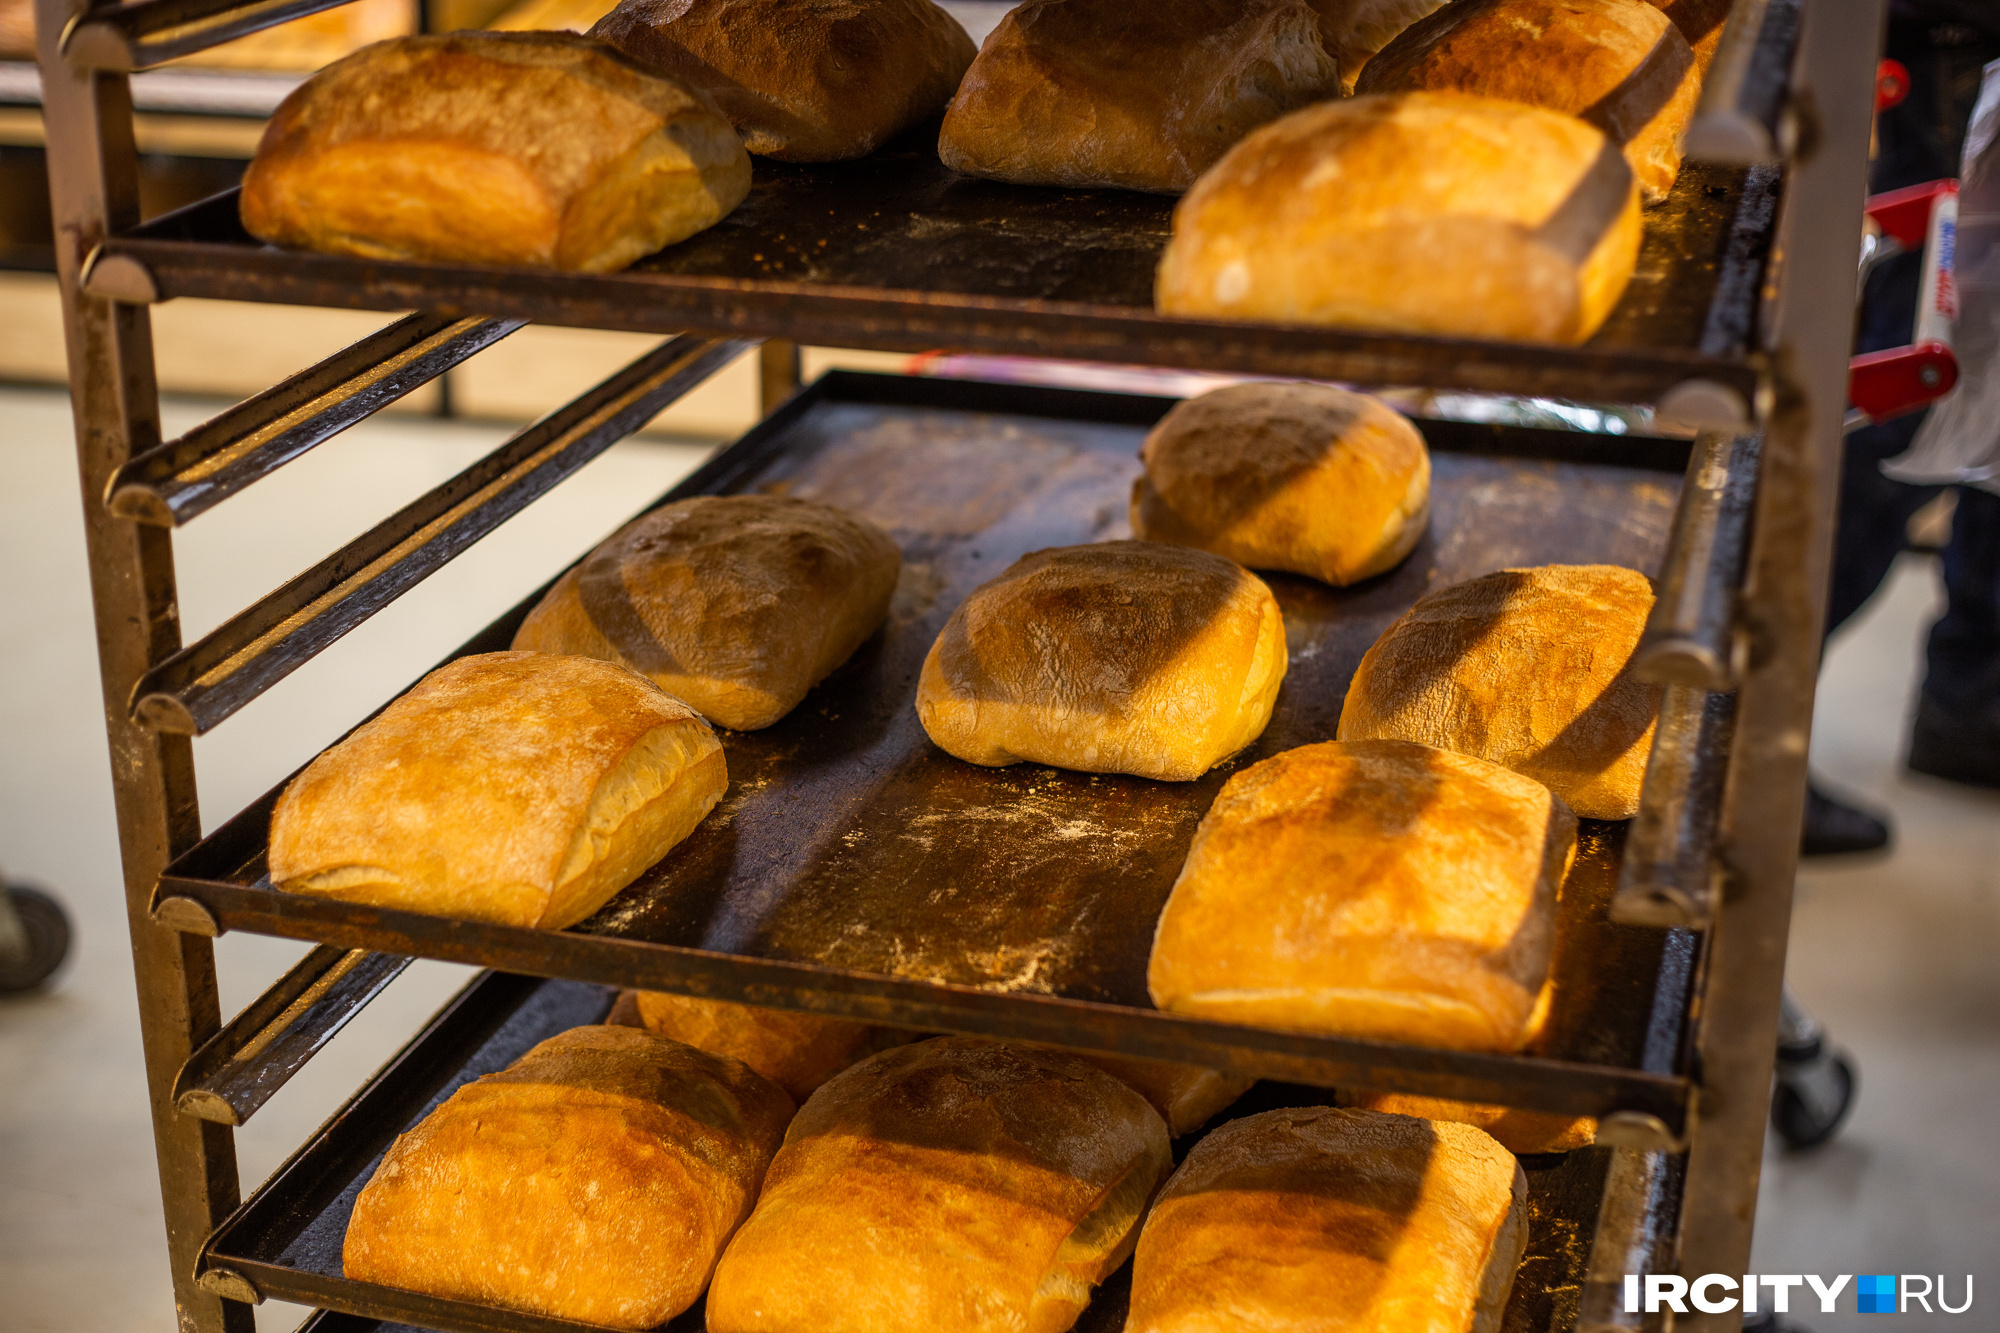 Хлеб в Красноярске подорожал на 30%, сообщили СМИ. Это так? Спойлер: нет, но цены и правда скоро вырастут